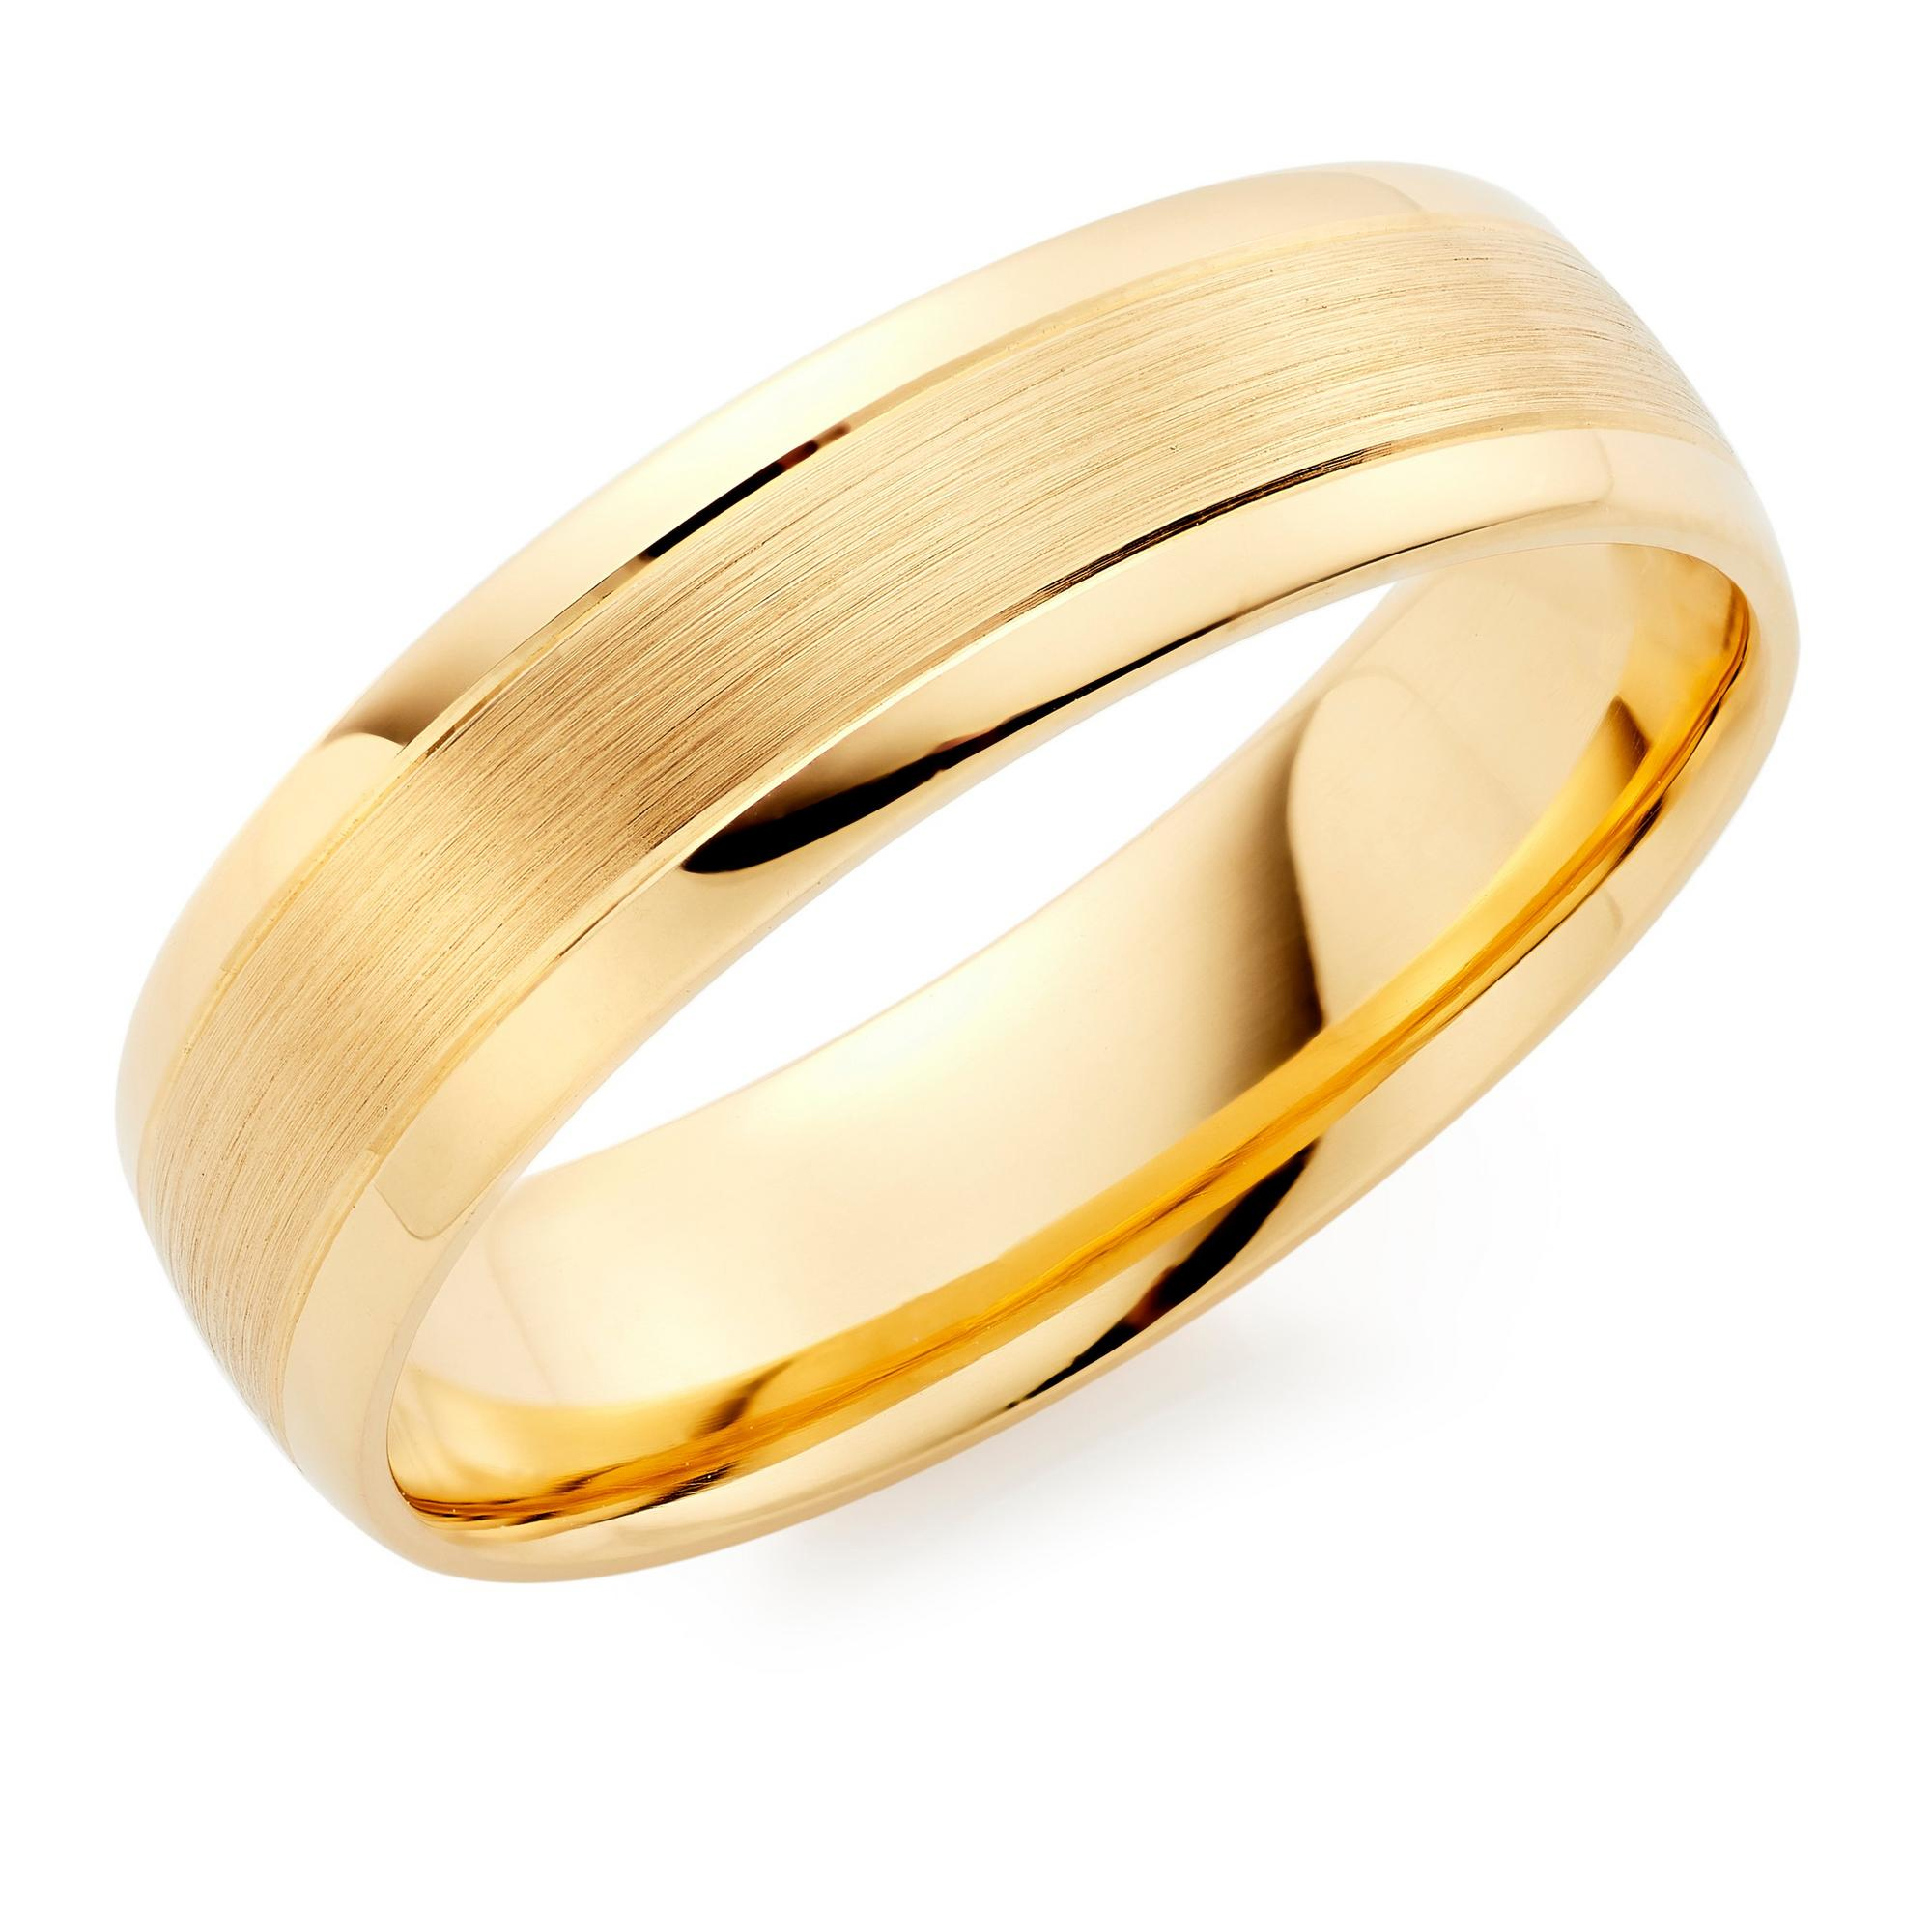 18ct Yellow Gold Men’s Wedding Ring